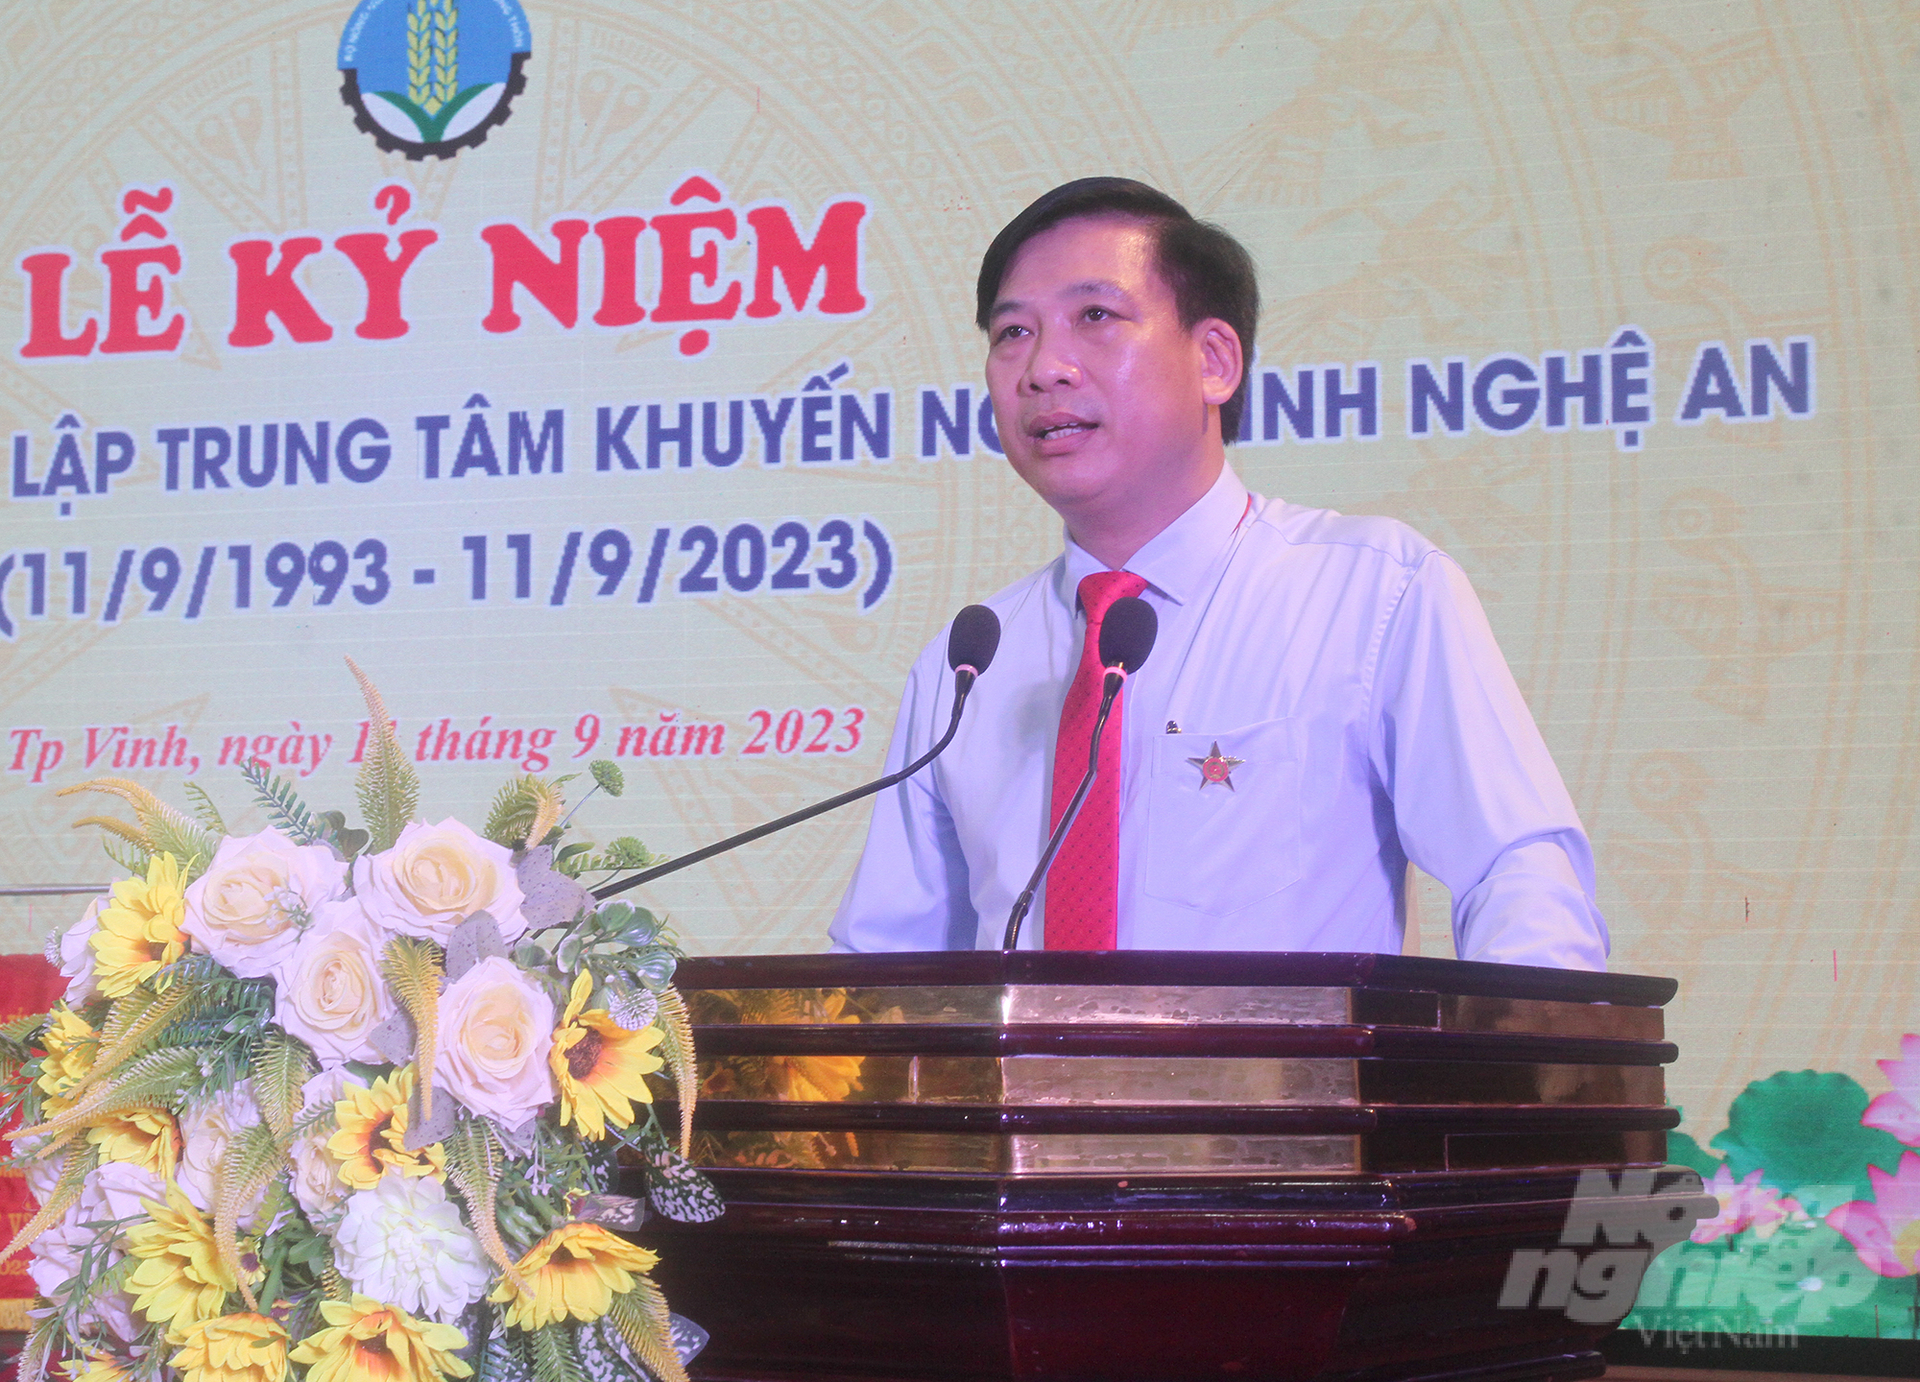 Ông Tạ Quang Sáng, Giám đốc Trung tâm Khuyến nông Nghệ An chia sẻ những dấu mốc quan trọng của đơn vị trong 30 năm phát triển. Ảnh: Việt Khánh.